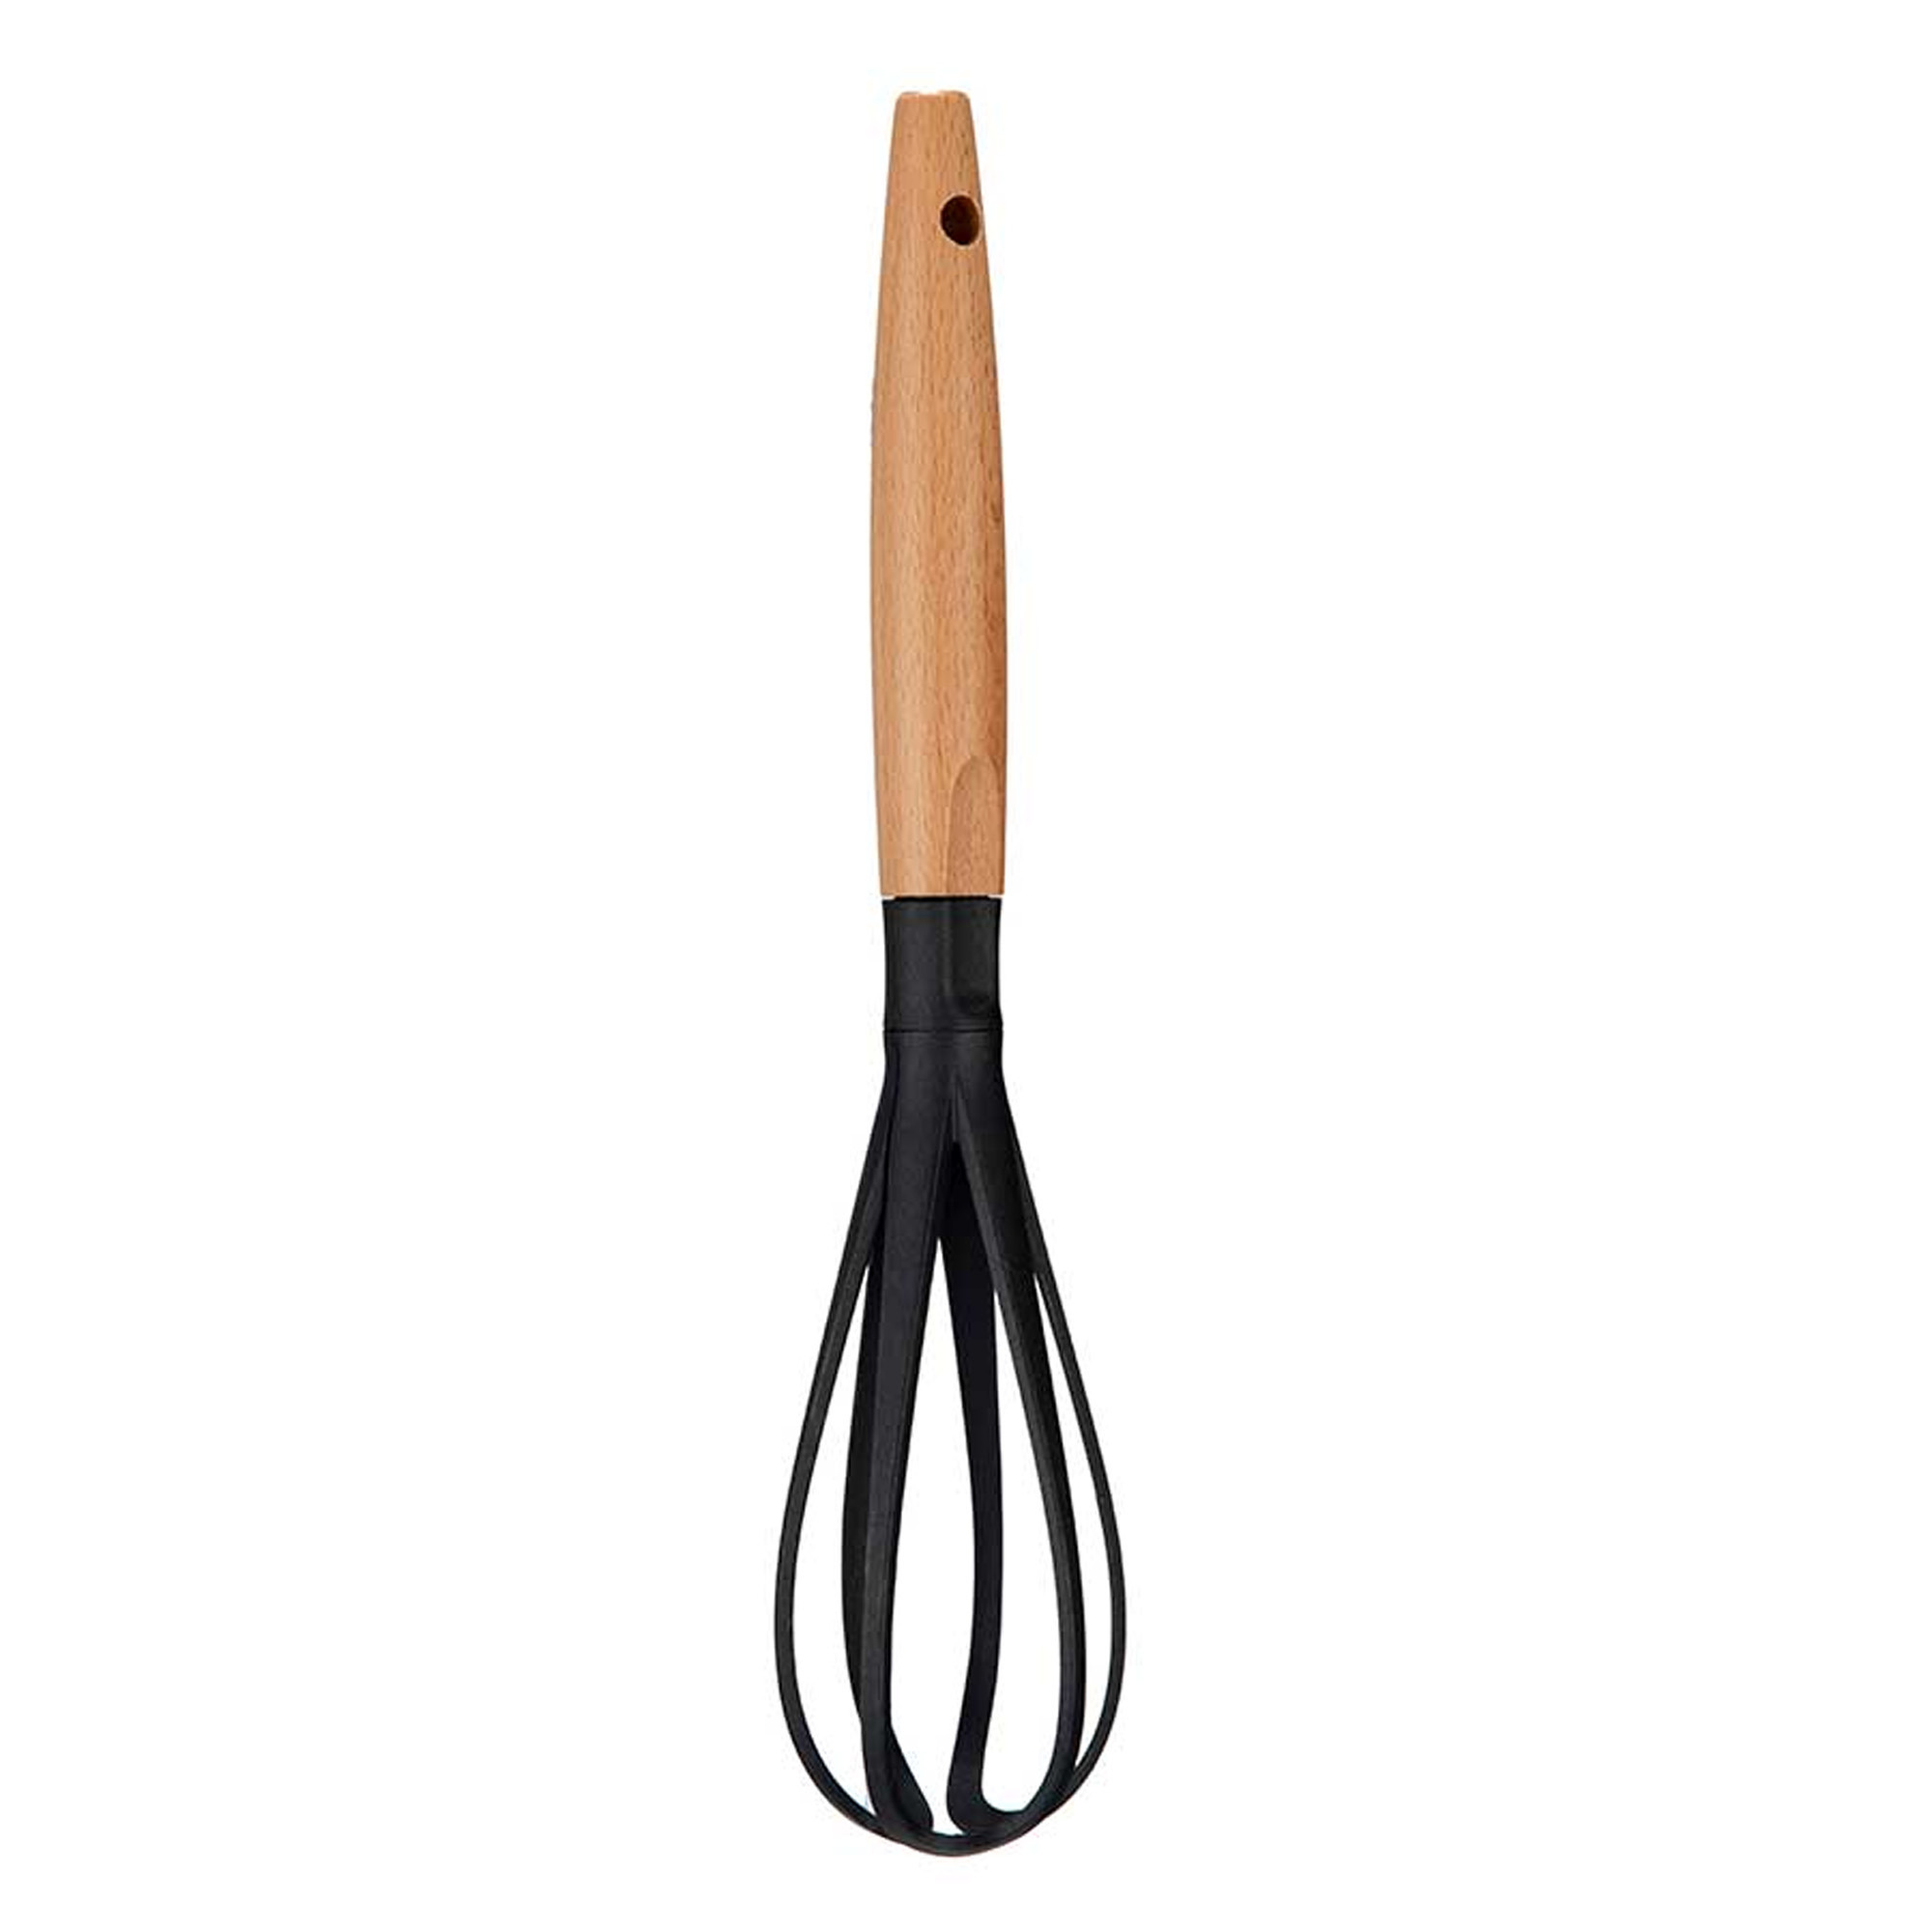 Kook-keuken gerei garde-opklopper zwart-bruin kunststof-hout 31 cm